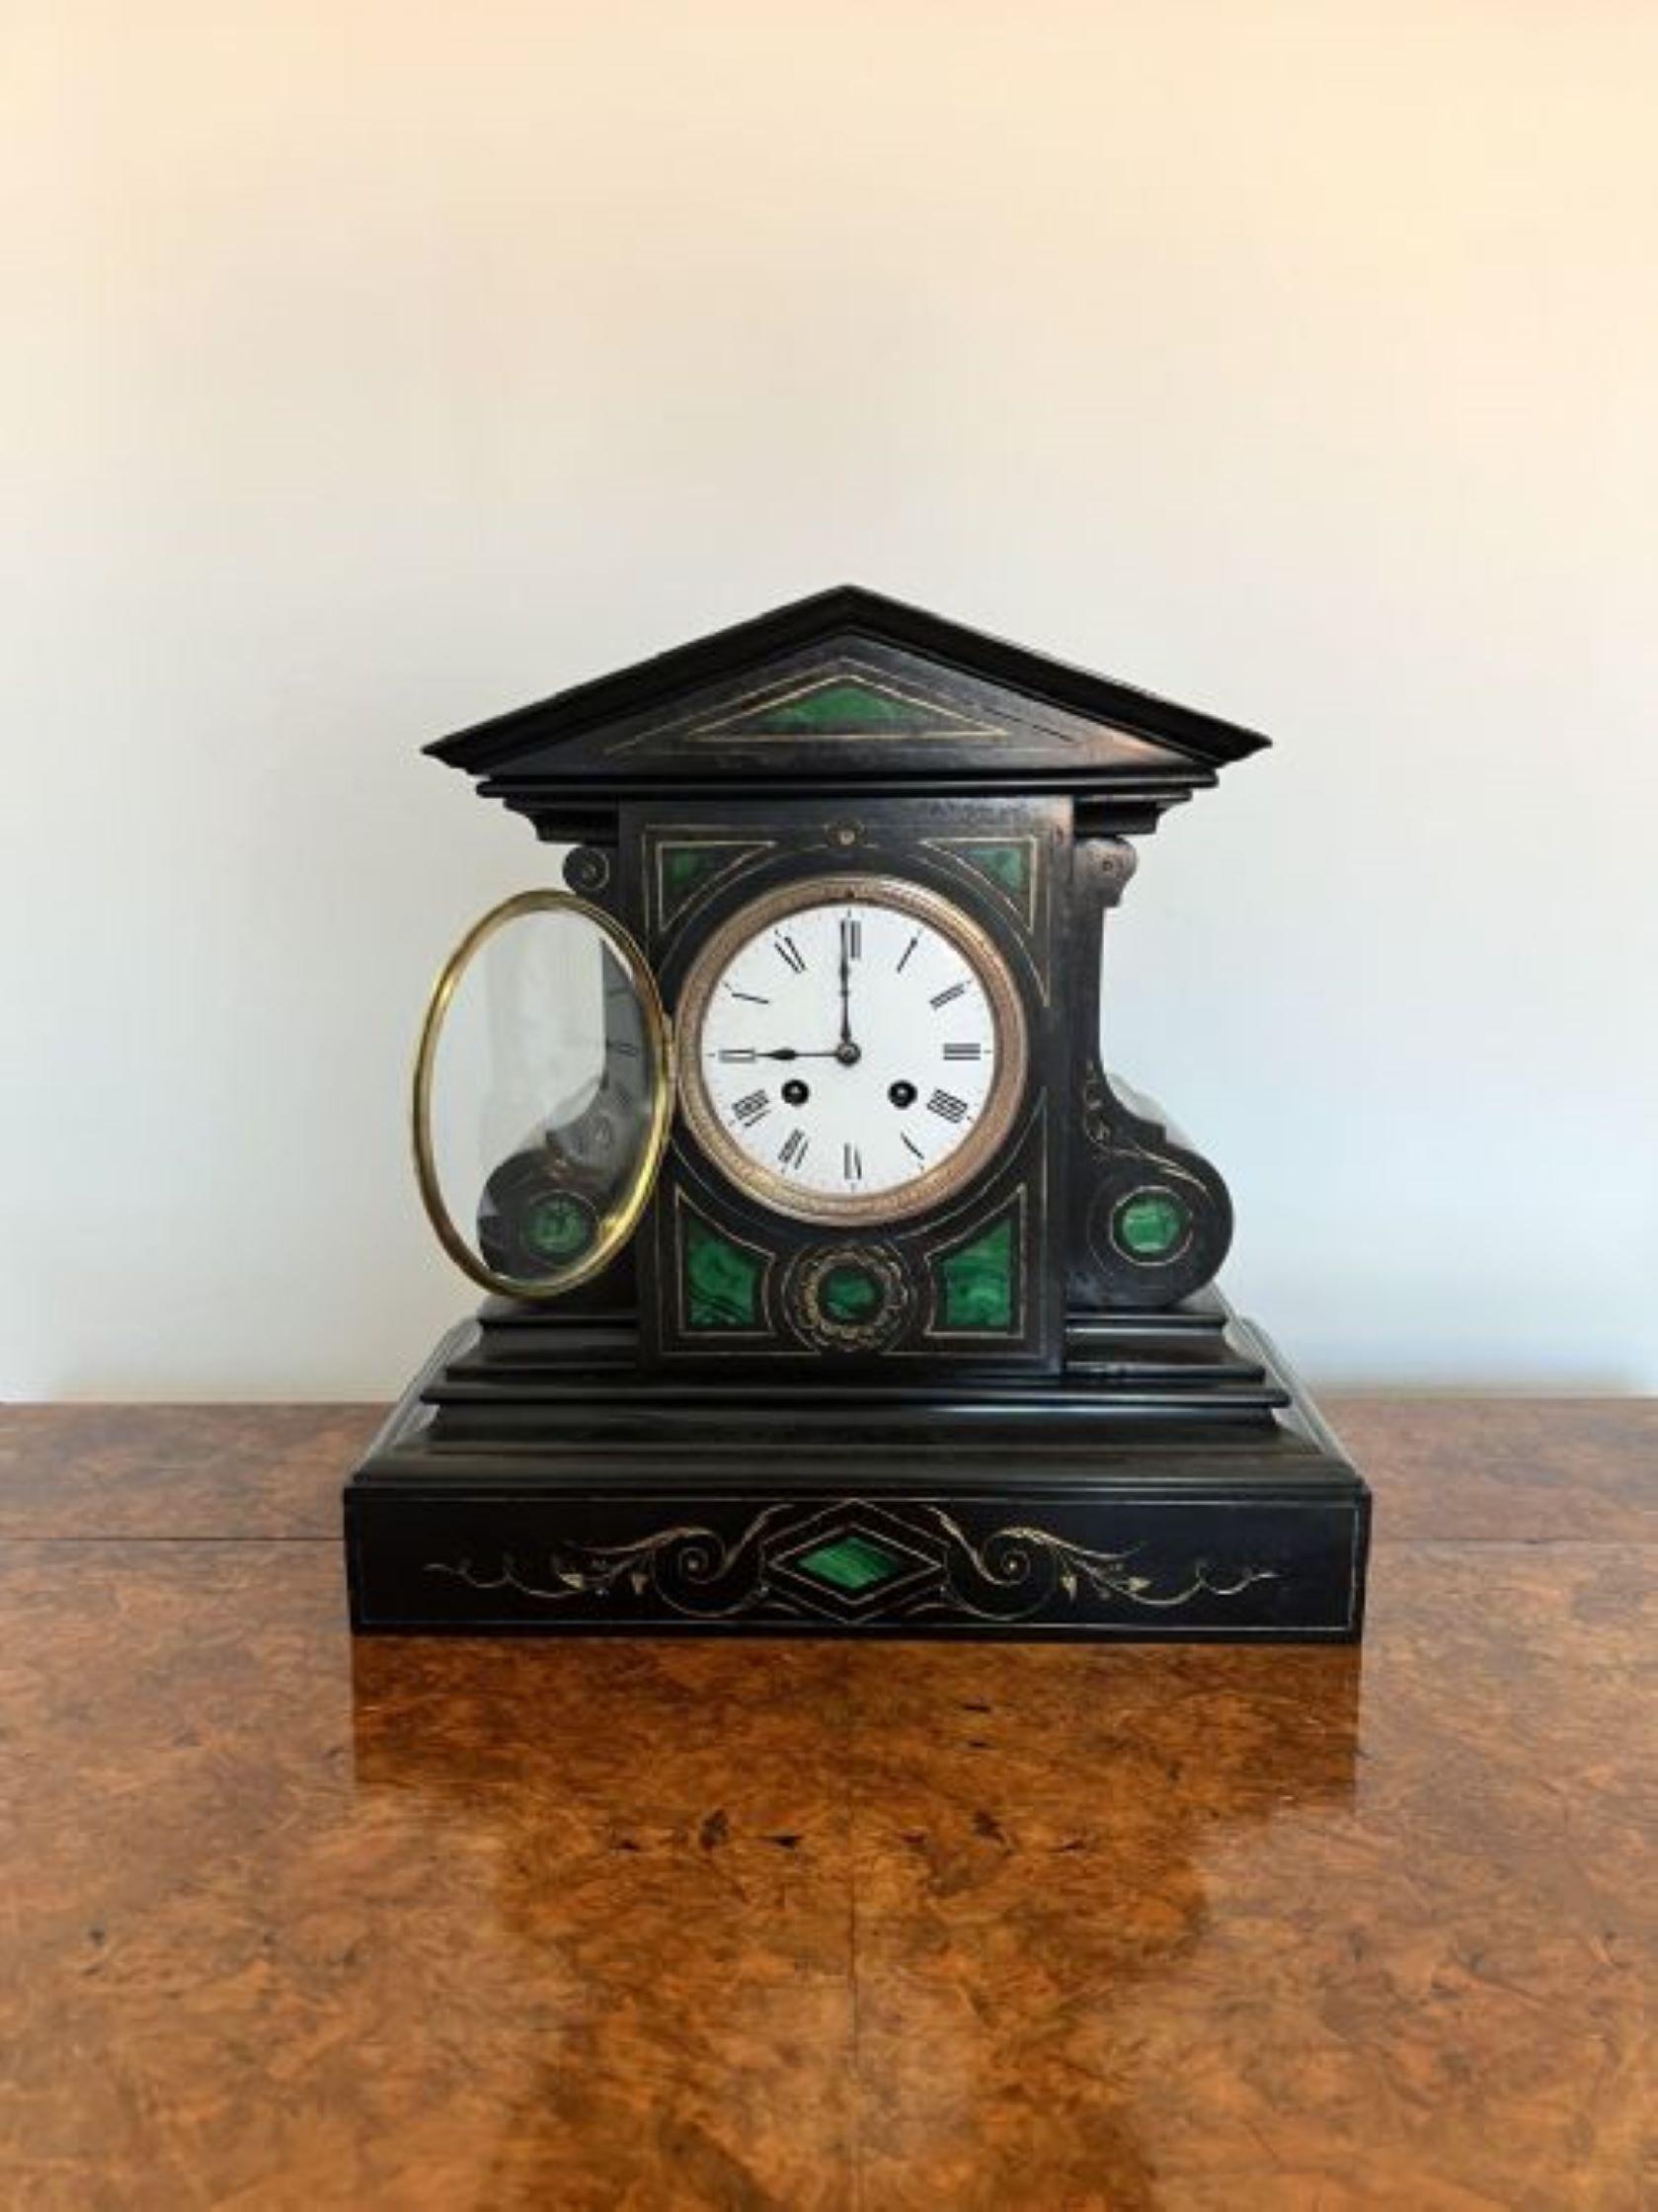 Ungewöhnliche antike viktorianische Qualität Marmor acht Tag Mantel Uhr mit einer ungewöhnlichen Qualität antiken viktorianischen Marmor Mantel Uhr, 
Mit einer Qualität ungewöhnlich geformten Marmorgehäuse mit Malachit und vergoldeten Details